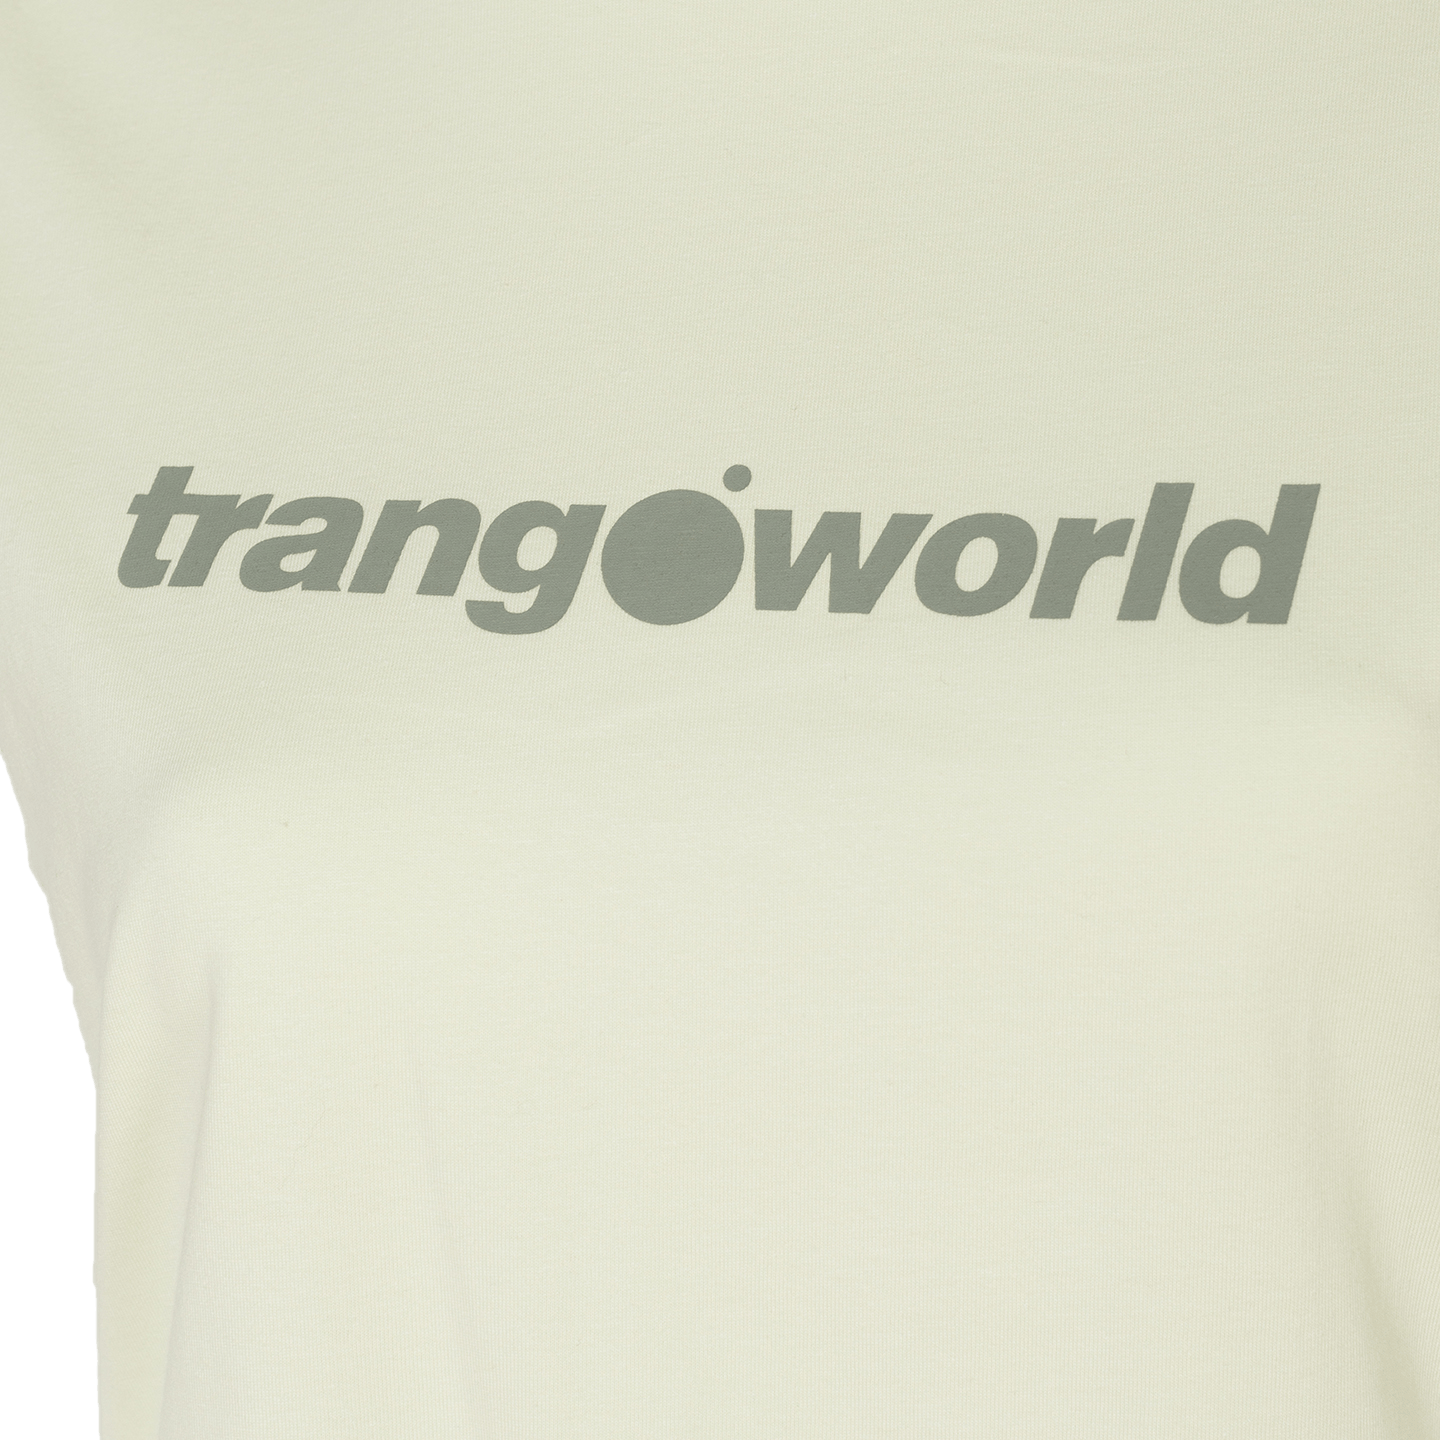 Camiseta Trangoworld Imola - Camiseta Mujer  MKP